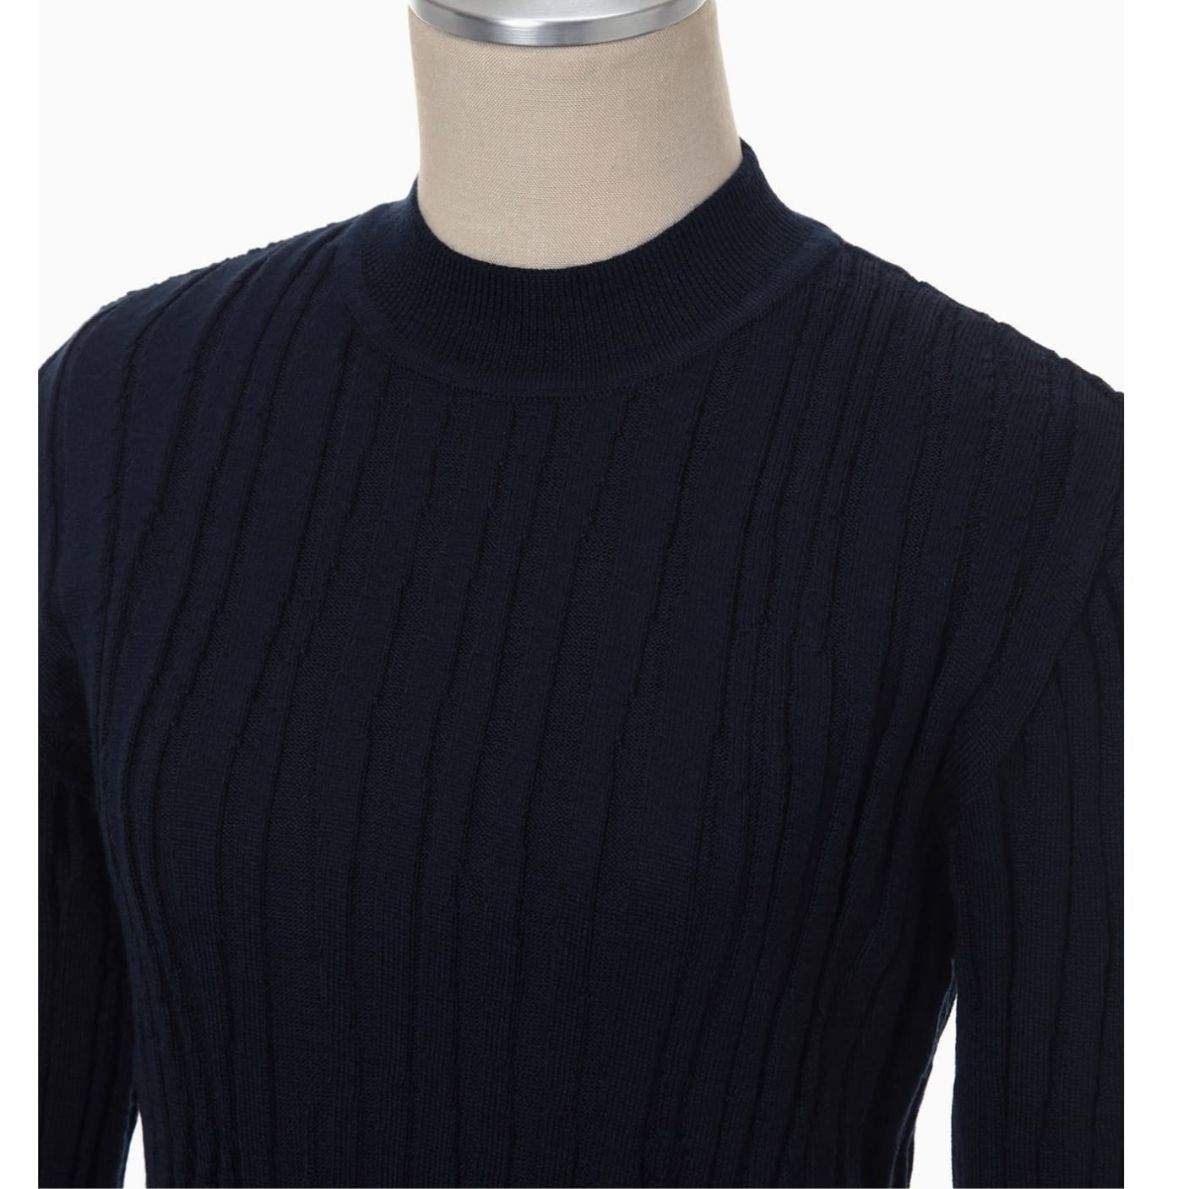 DONNA Les Boutiques - Sweater knit